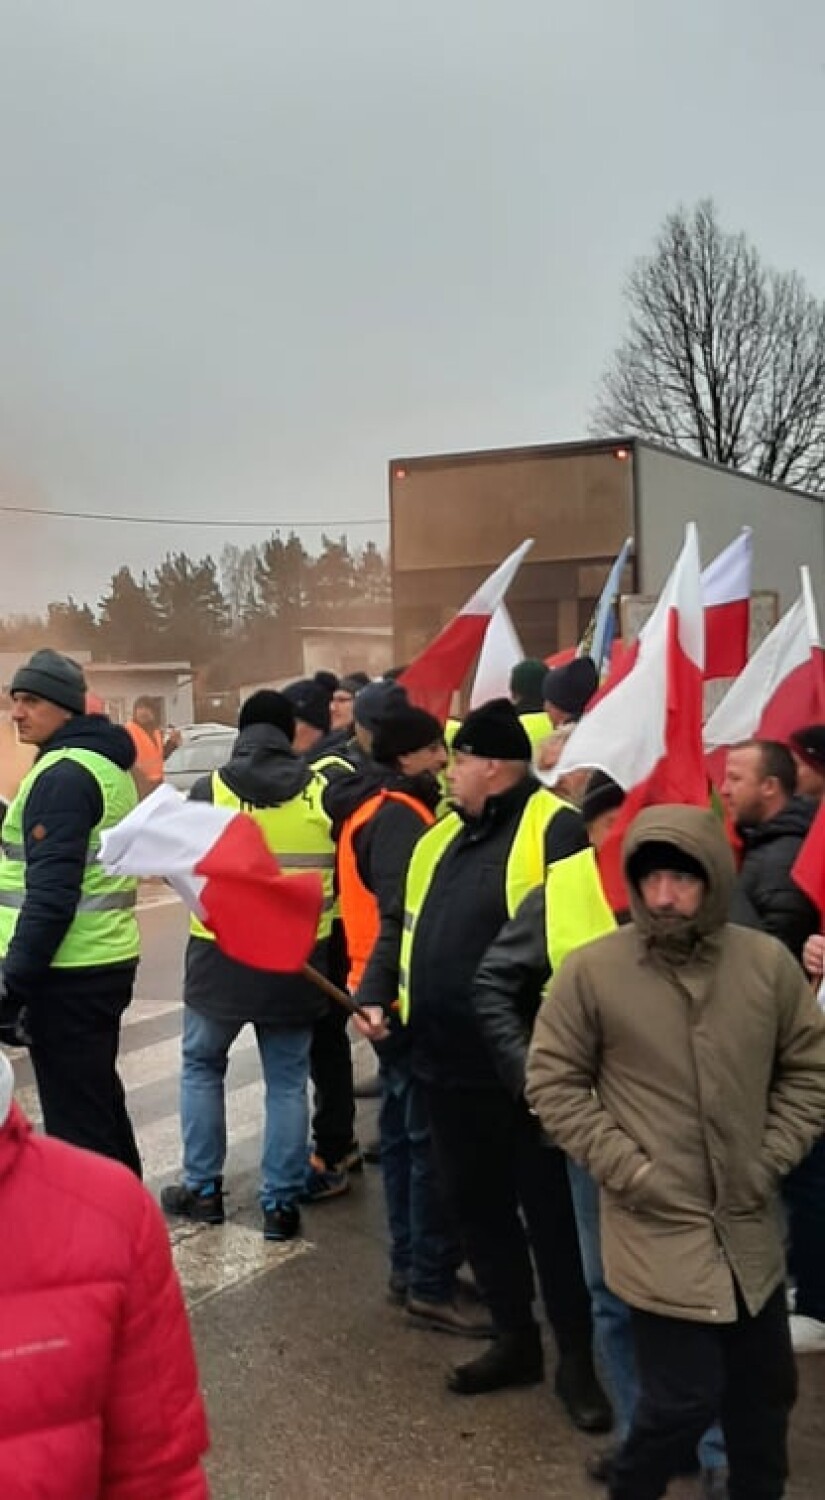 Protest rybaków w Kębłowie. Wśród postulatów m.in. odblokowanie unijnych funduszy 